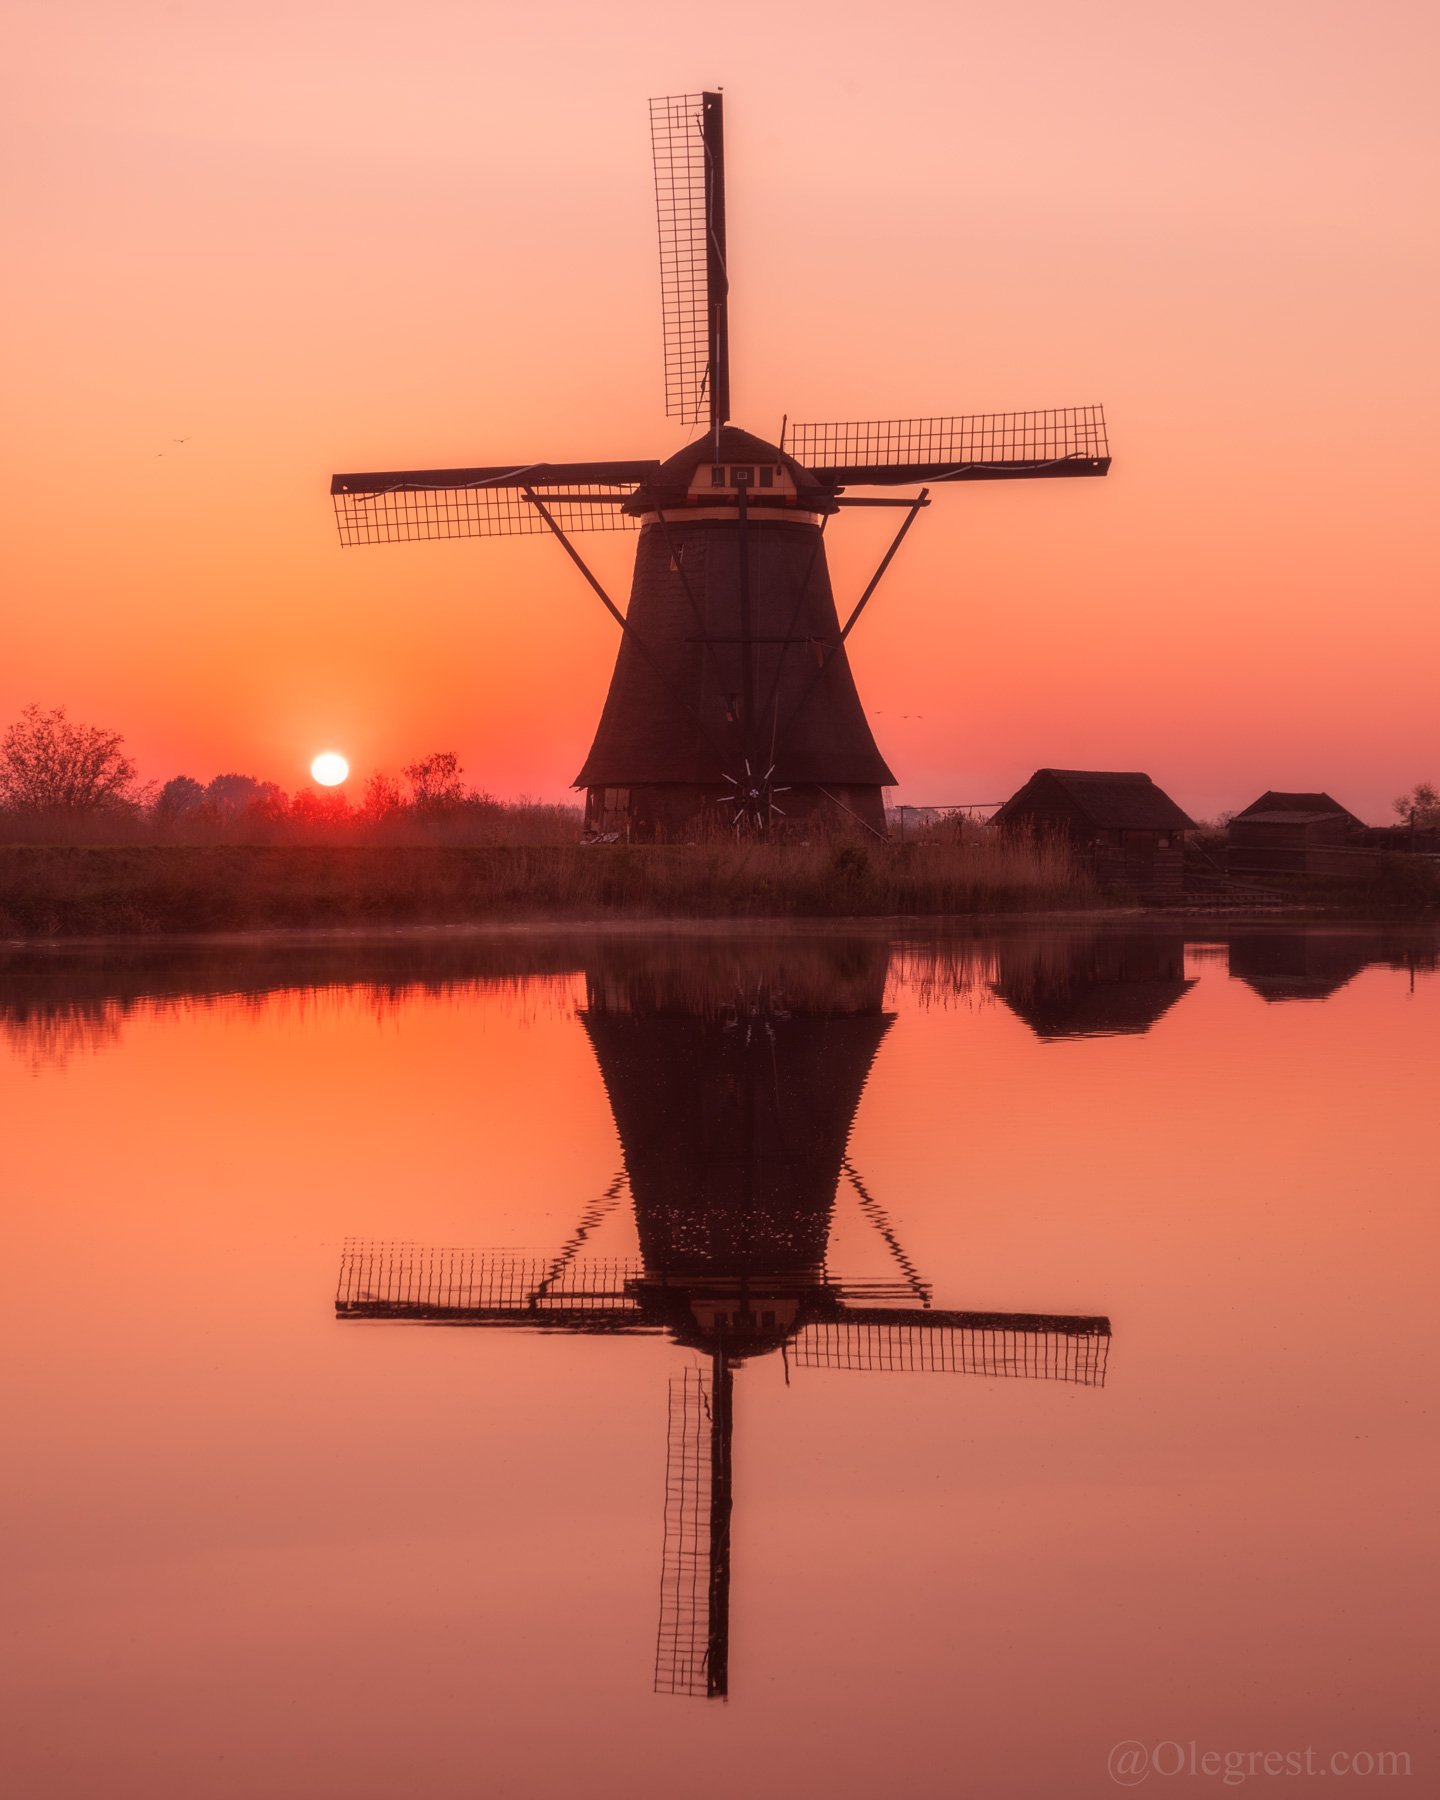 мельница голландия рассвет отражение, Oleg Rest